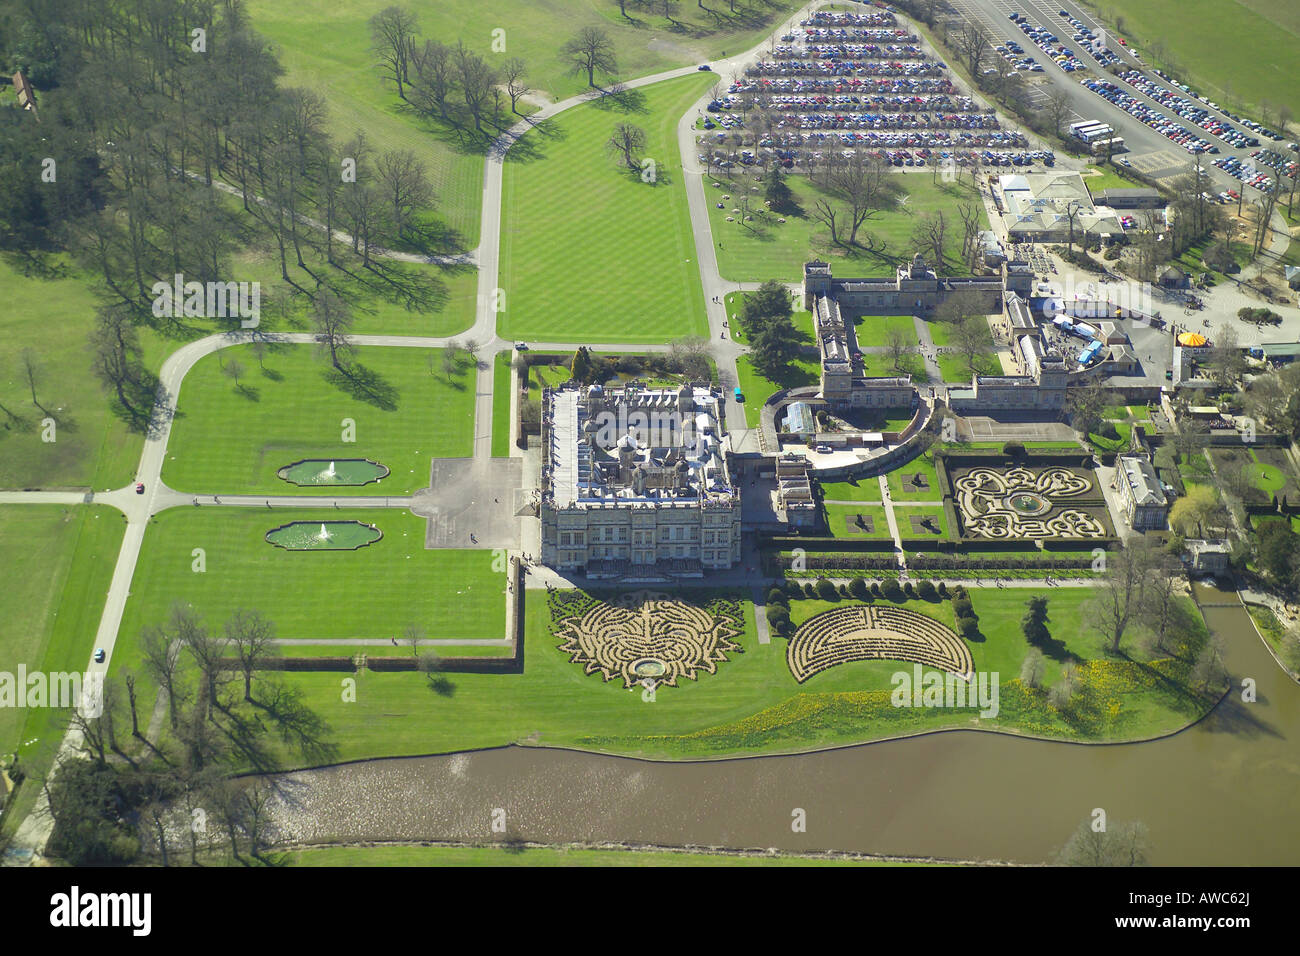 Vista aérea de Longleat House se muestra con sus jardines formales y lago. La casa señorial es famoso por su Parque Safari Foto de stock